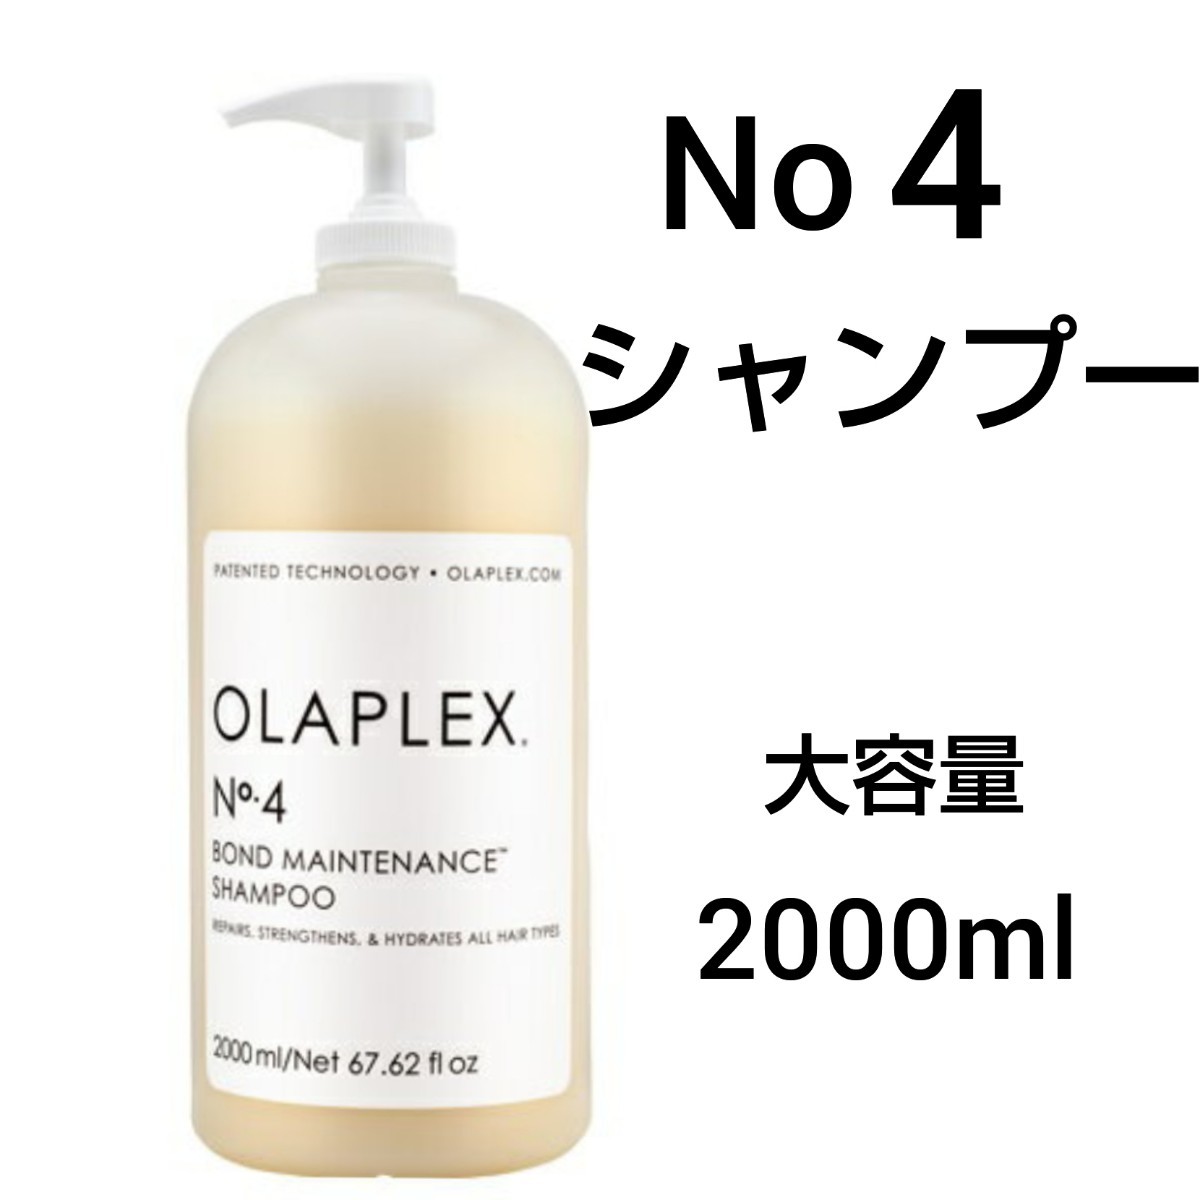 オラプレックス No.4 シャンプー 2000ml サロンサイズ 業務用